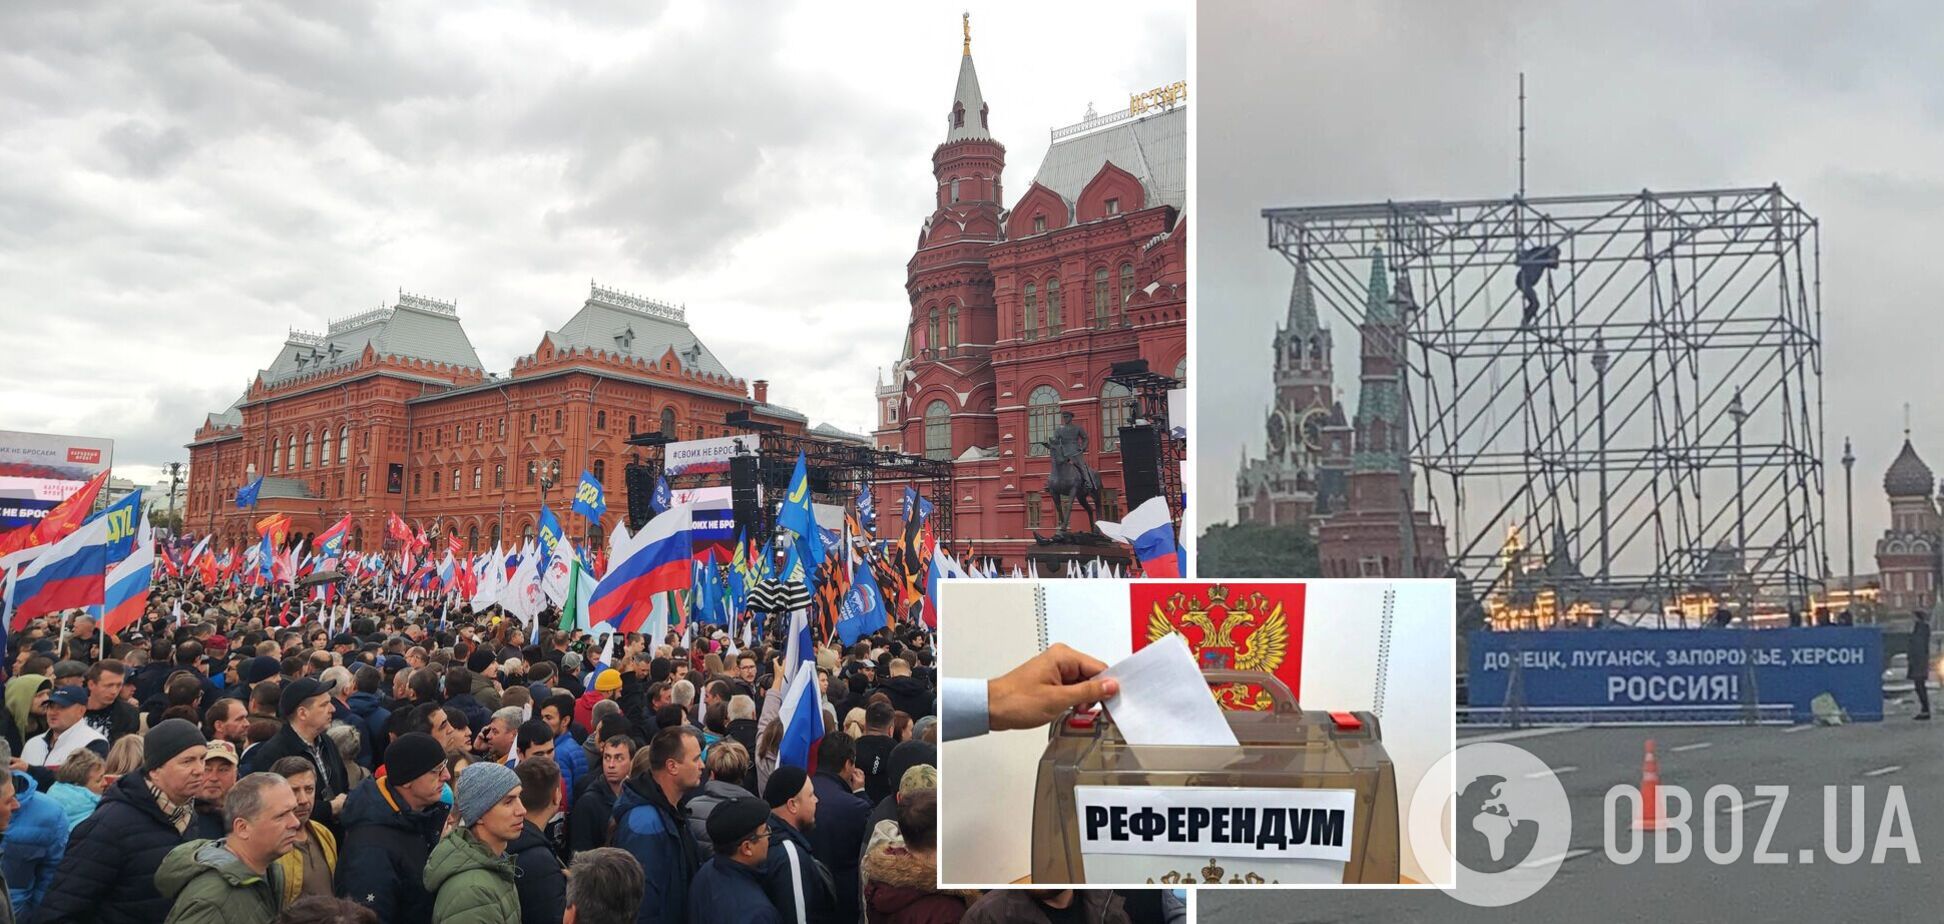 Пропагандисти готують свято у столиці РФ через референдум